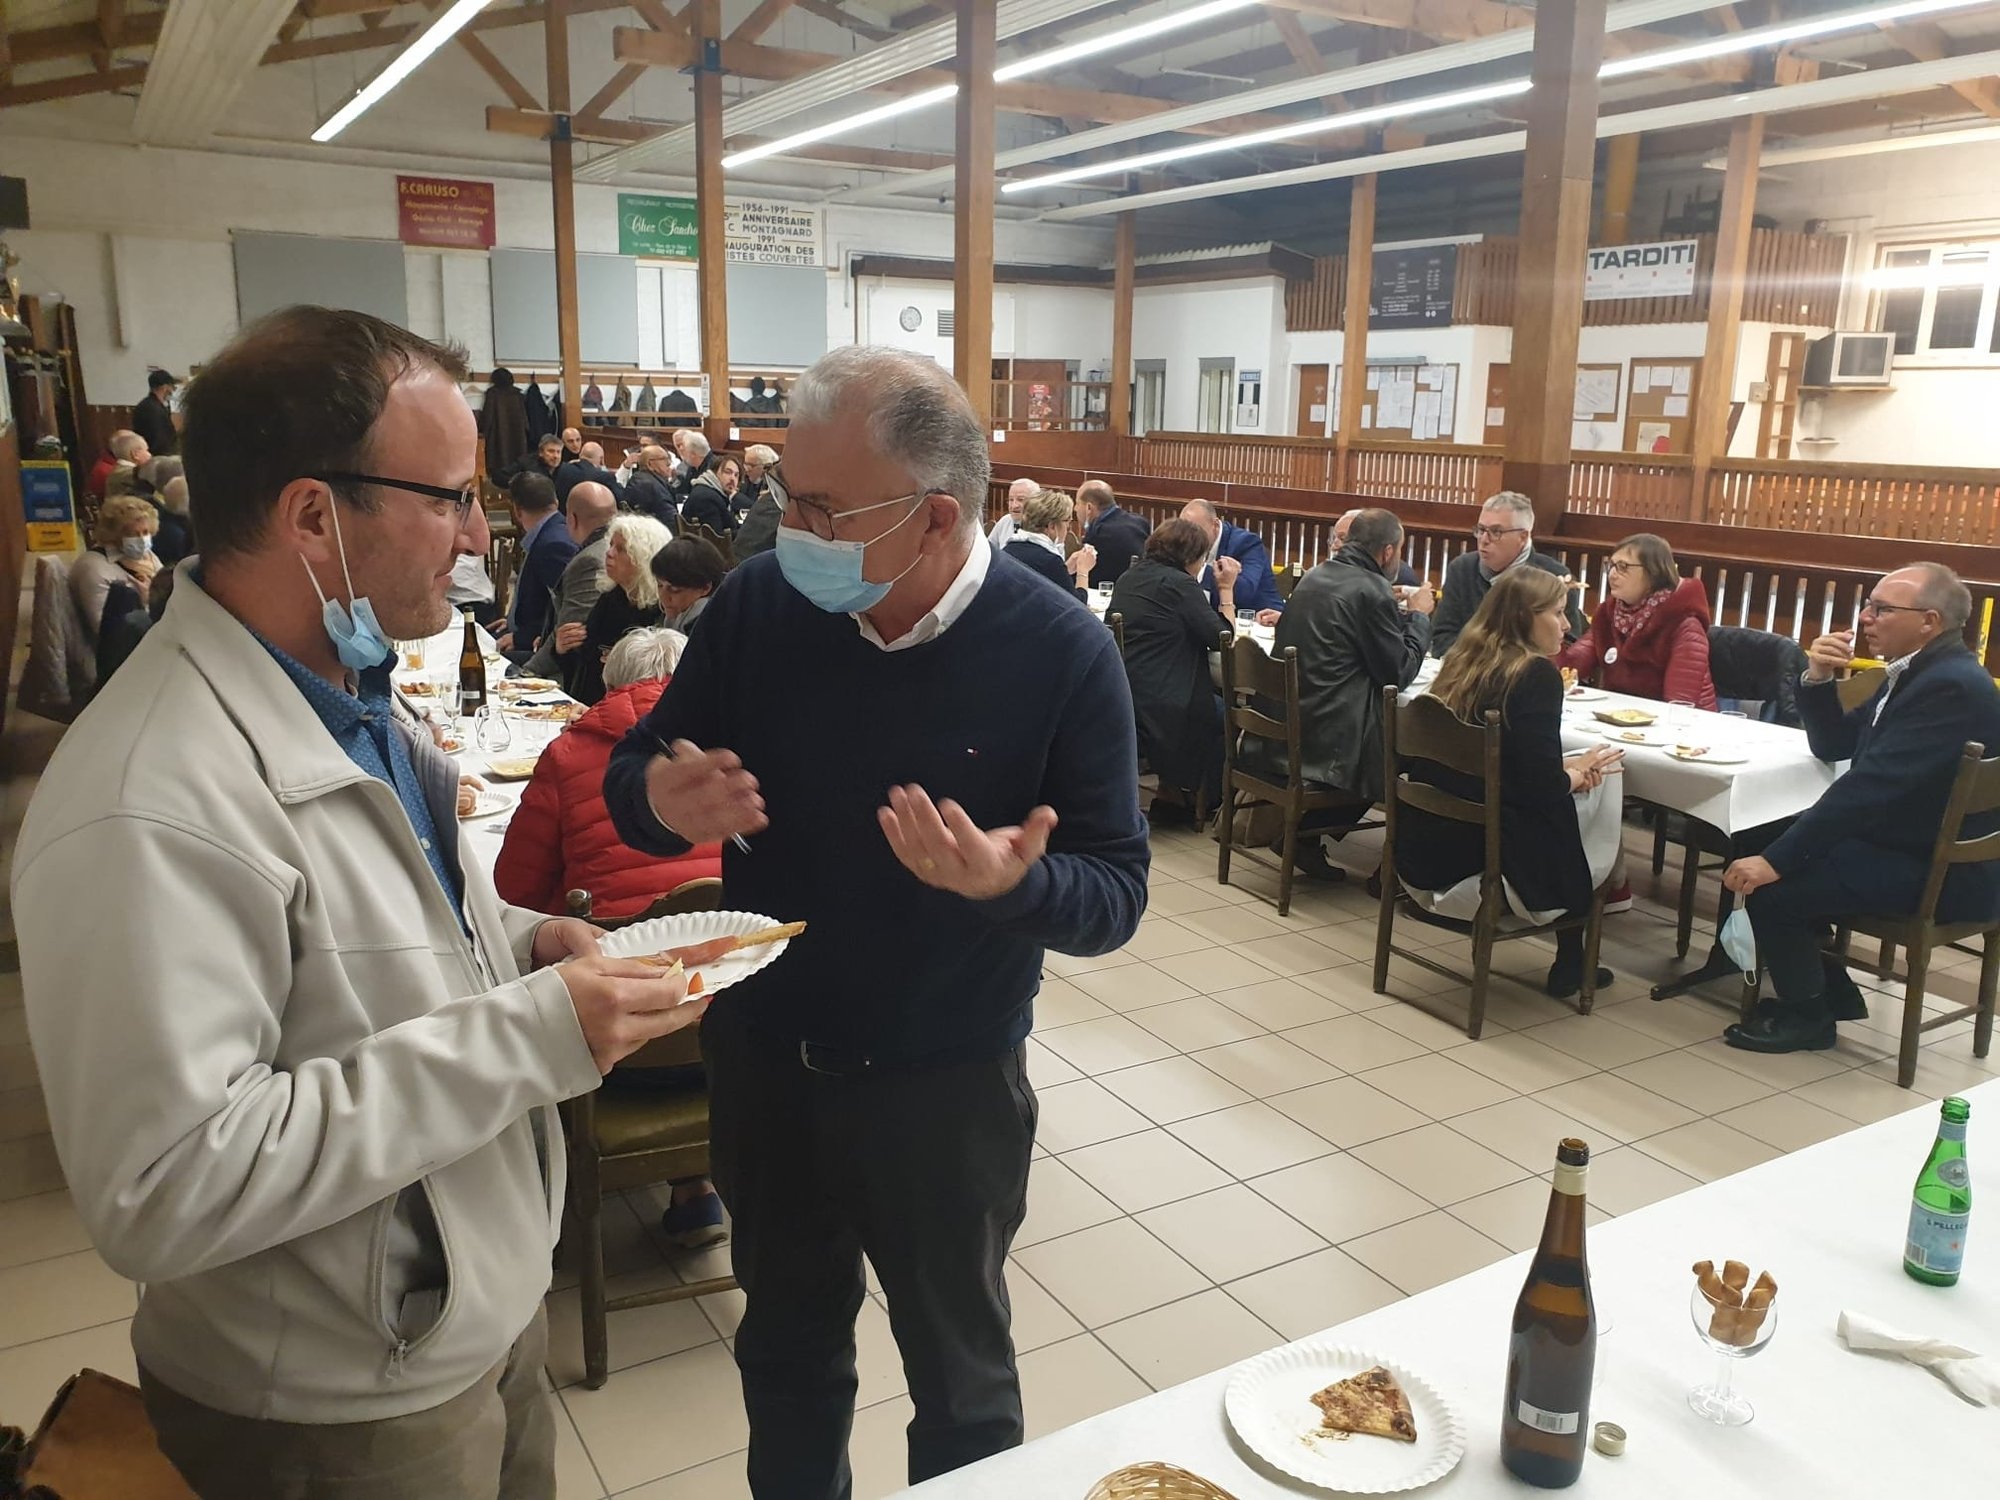 Mauro Quarta (masqué) avec le PLR Frédéric Vaucher, lors du débat politique organisé au Boccia-Club montagnard, à La Chaux-de-Fonds.